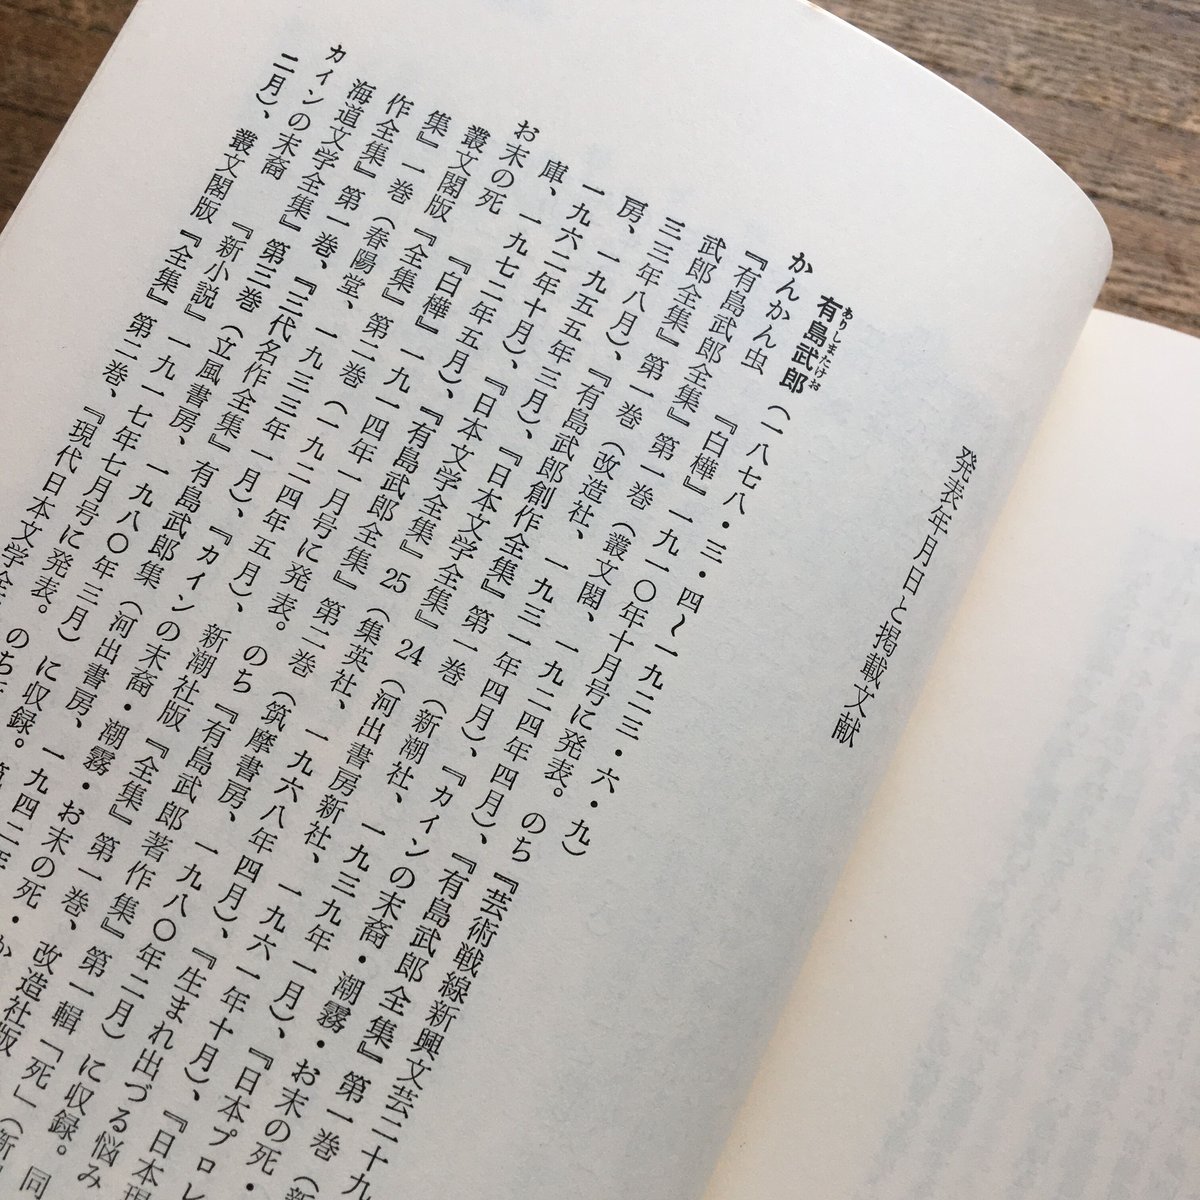 新日本出版社「日本プロレタリア文学集」全40巻＋別巻